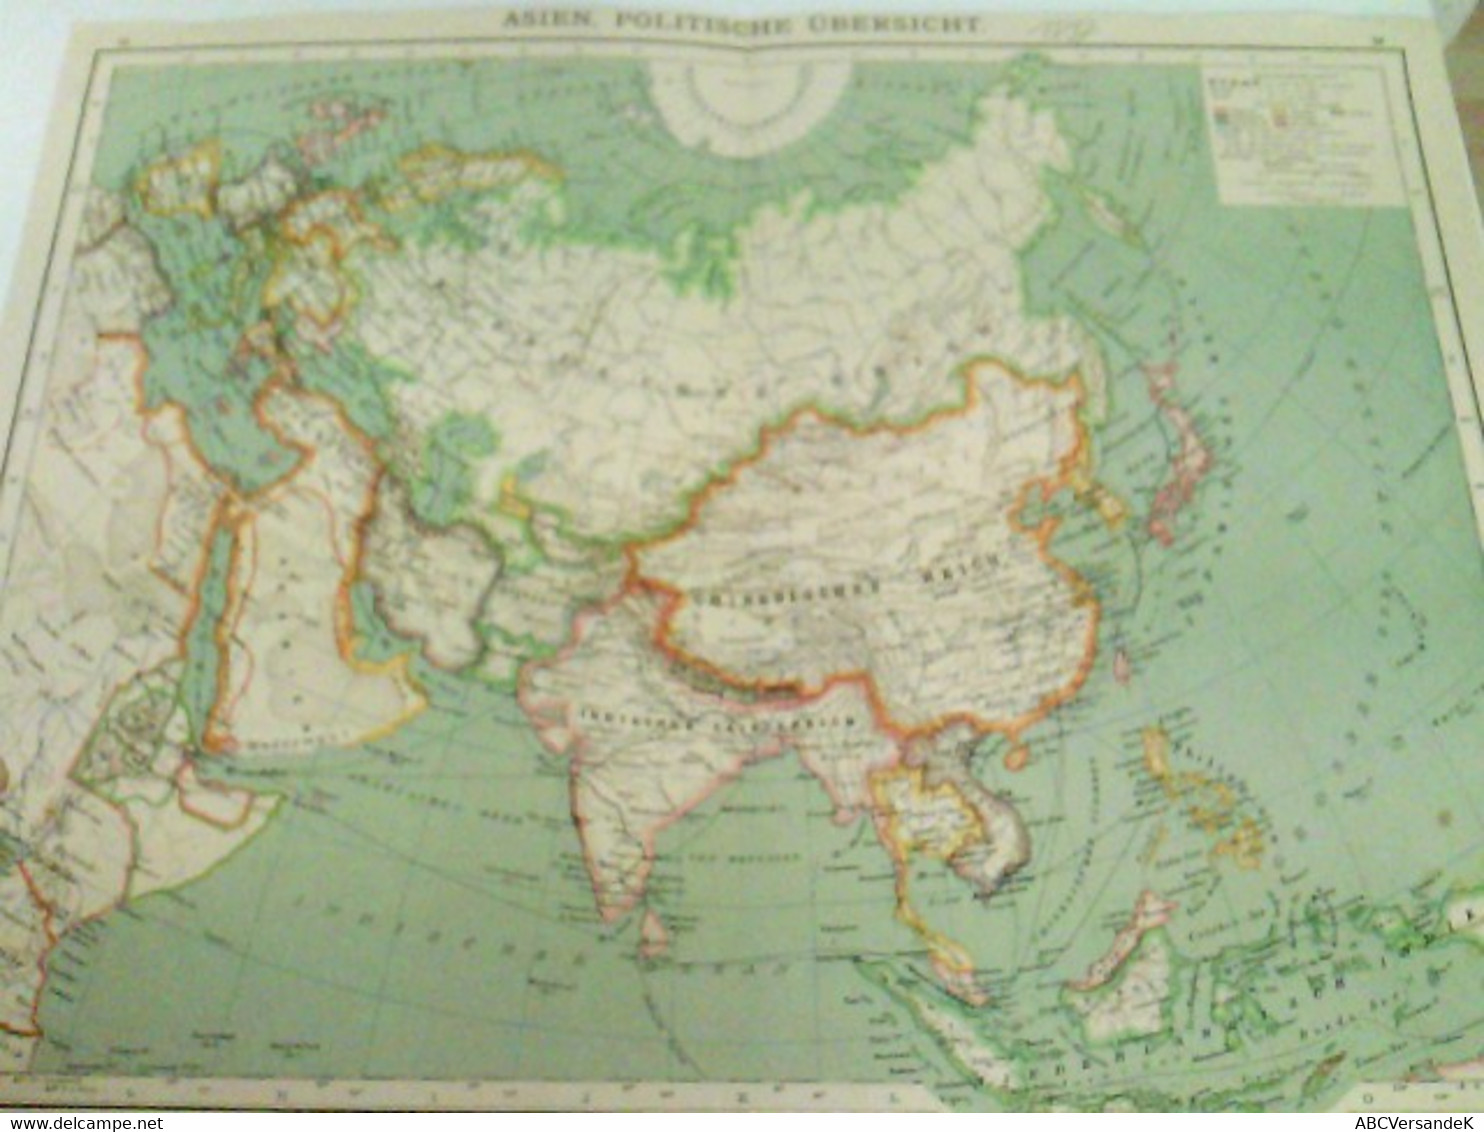 Farblithografie Asien, Politische Übersicht, Maßstab 1 : 35.000.000 - Asien Und Nahost